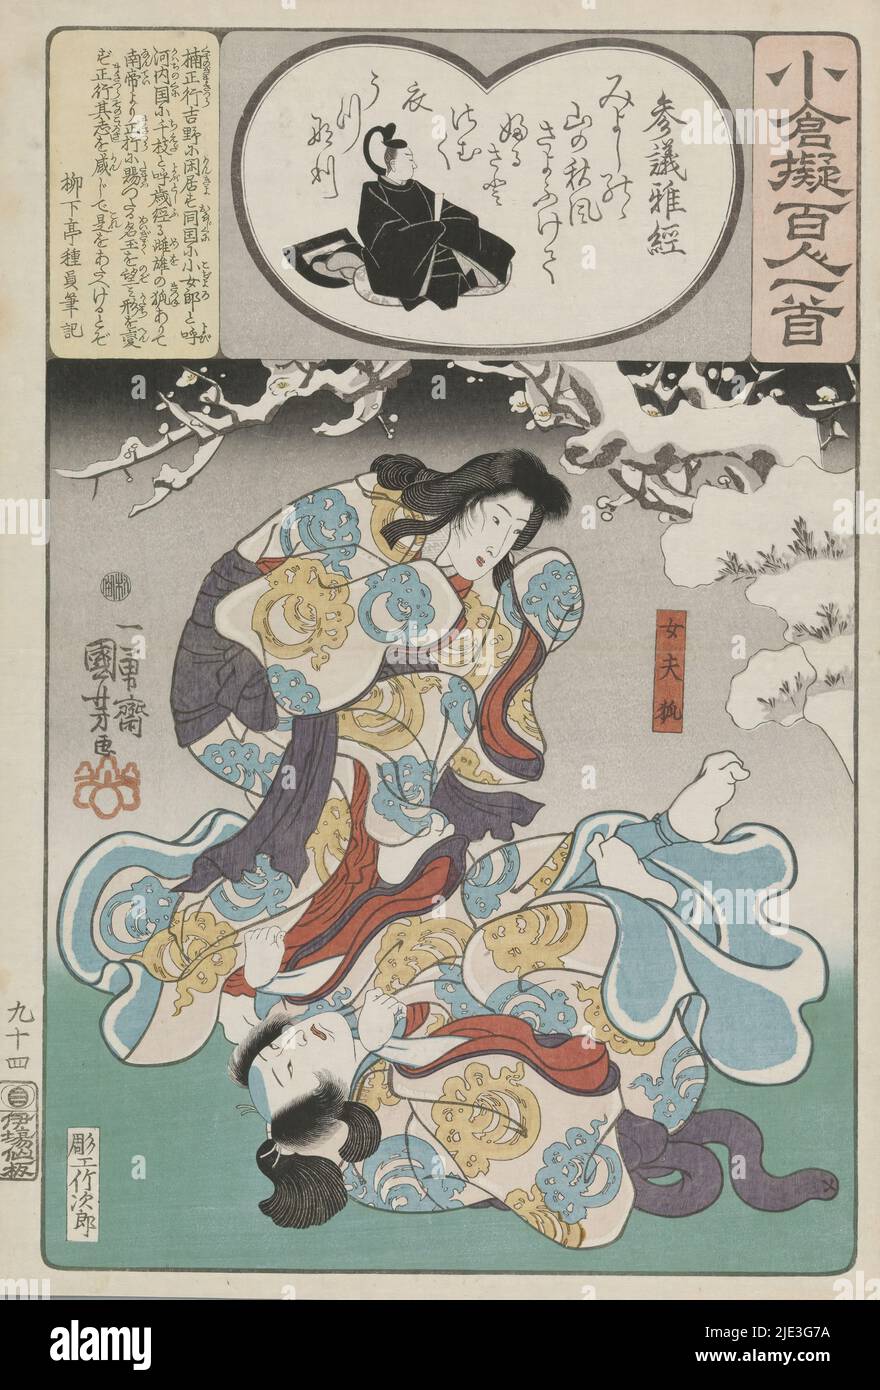 Ogura Imitation der hundert Gedichte (Serientitel), das Fuchspaar Tadanobu, in menschlicher Form, amüsieren sich im Schnee. Füchse waren in japanischen Geschichten als Shapeshifter bekannt. Szene aus einem Kabuki-Stück. Gedicht von Sangi Masatsune., Druckerei: Utagawa Kuniyoshi, (erwähnt auf Objekt), Yokogawa Takejiro, (erwähnt auf Objekt), Herausgeber: Ibaya Senzaburô, (Auf Objekt erwähnt), Japan, 1846, Papier, Farbholzschnitt Stockfoto